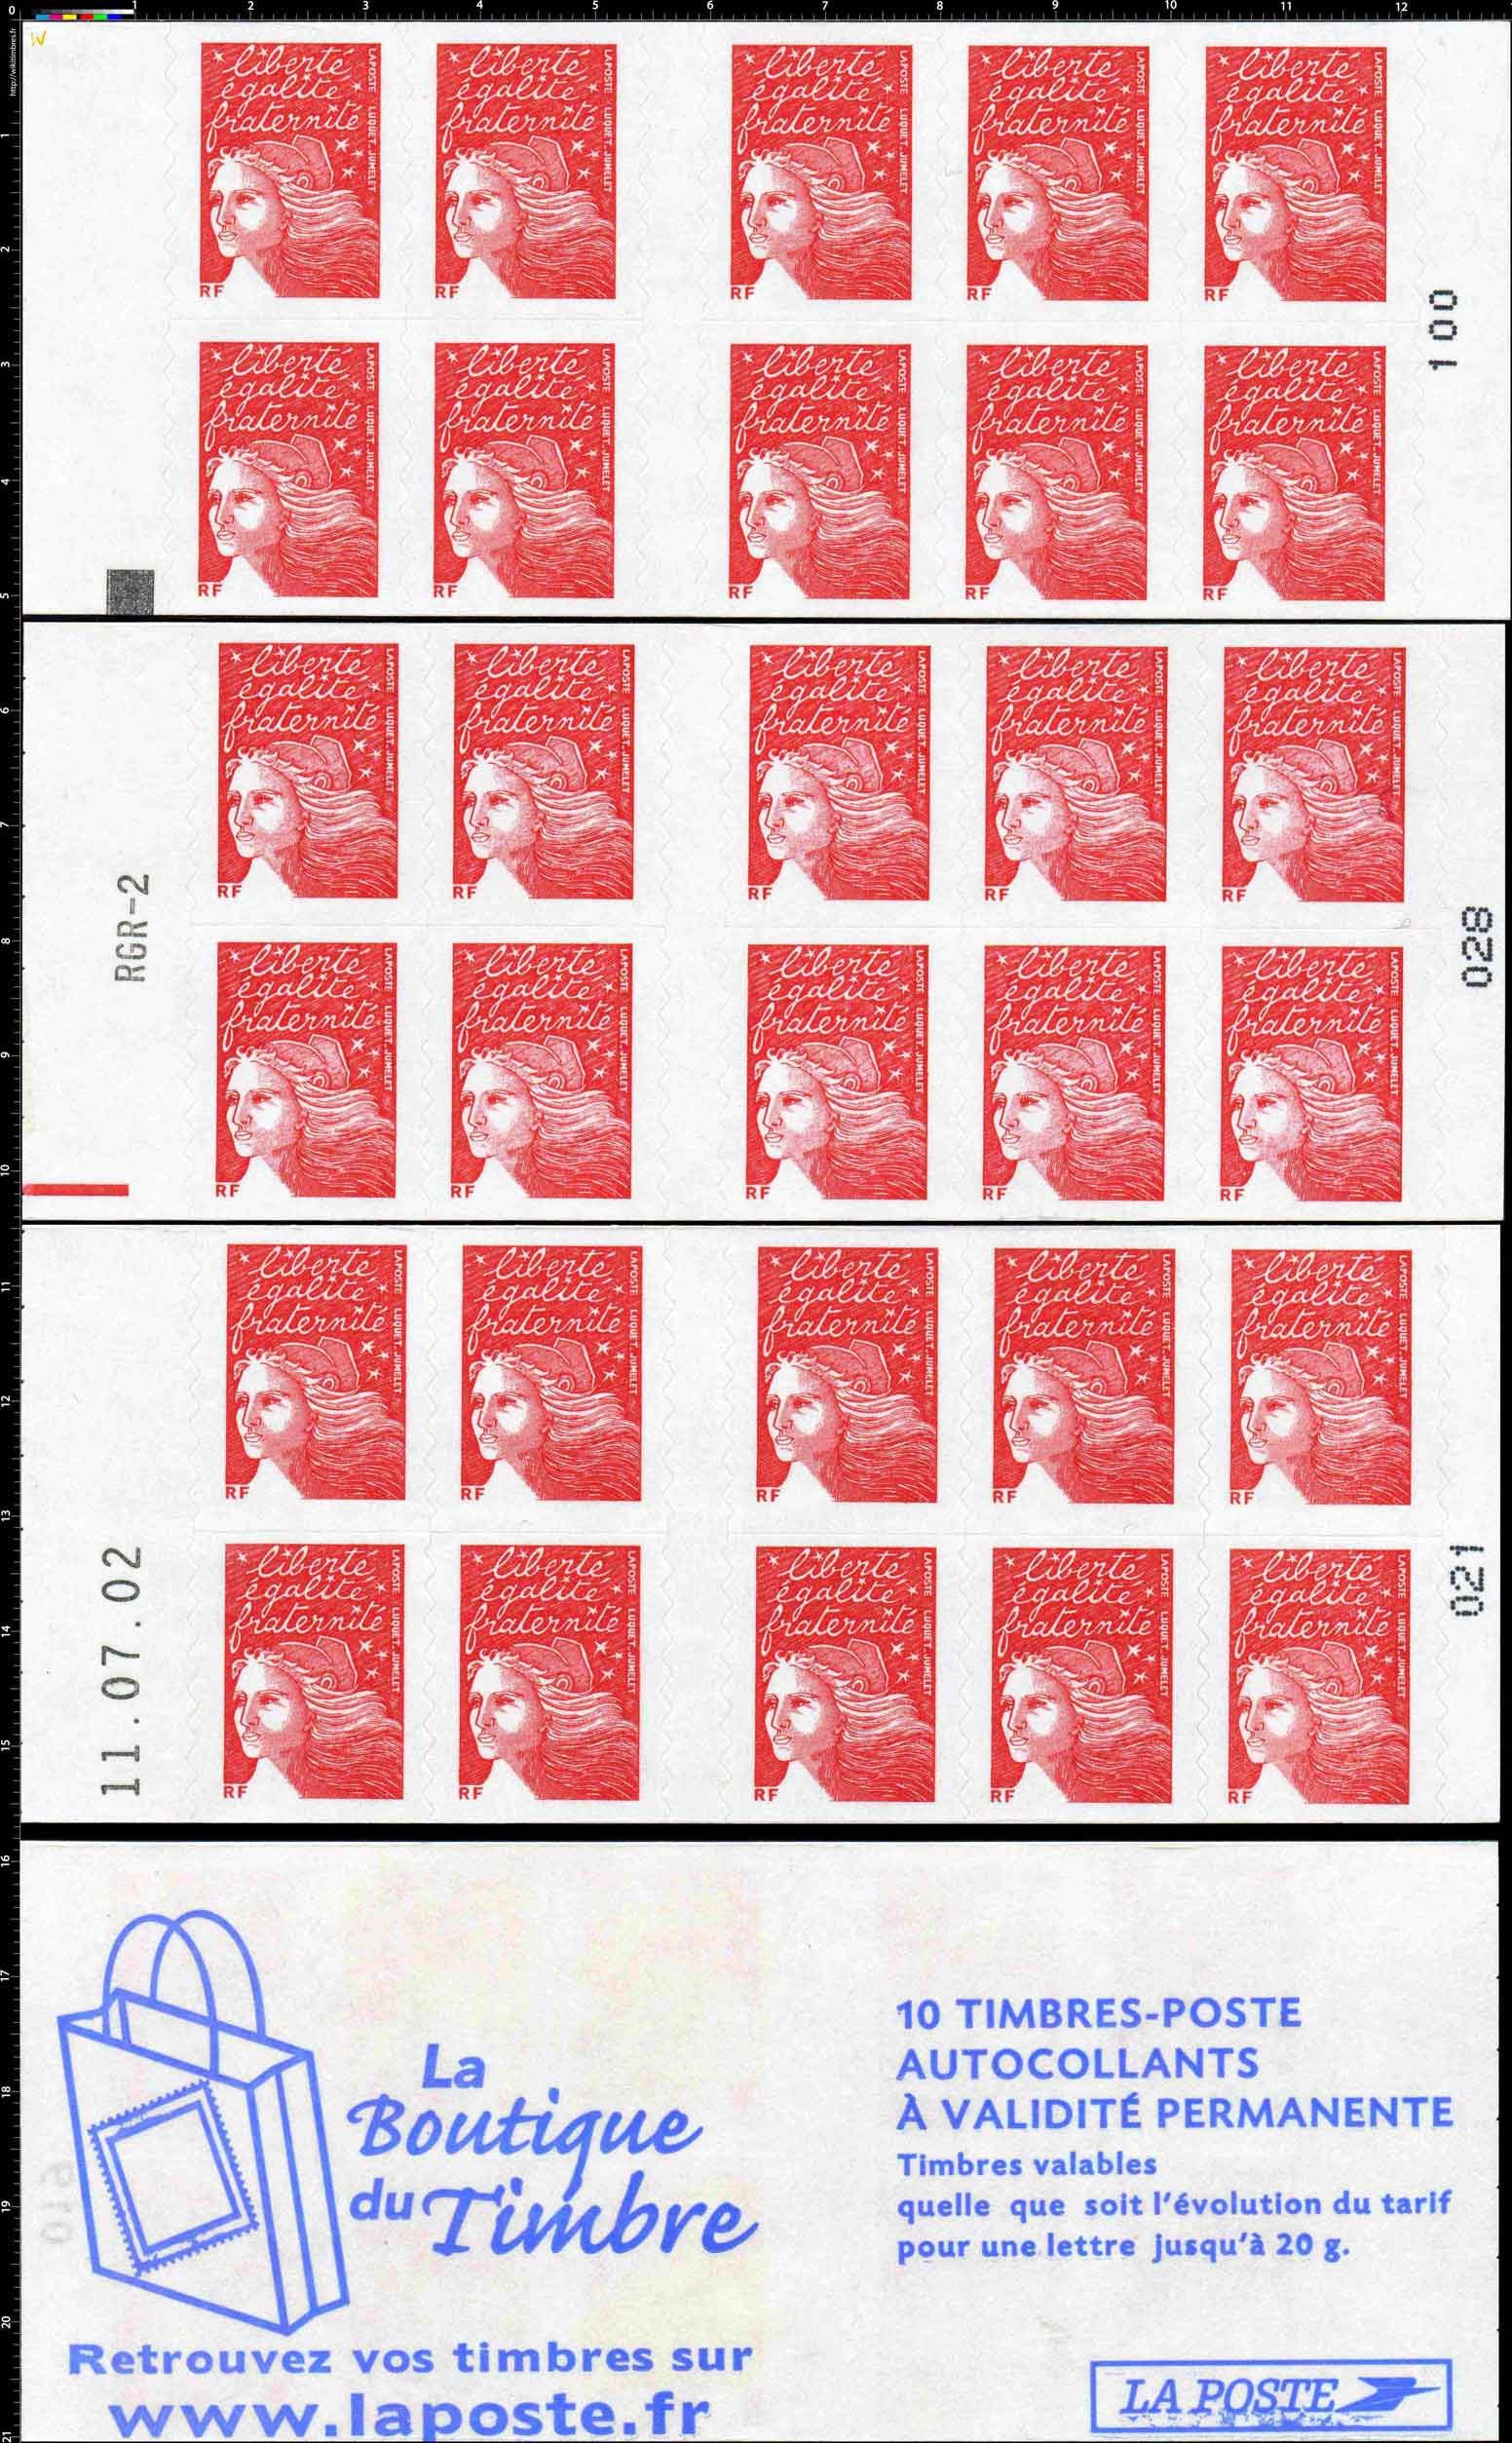 La boutique du timbre